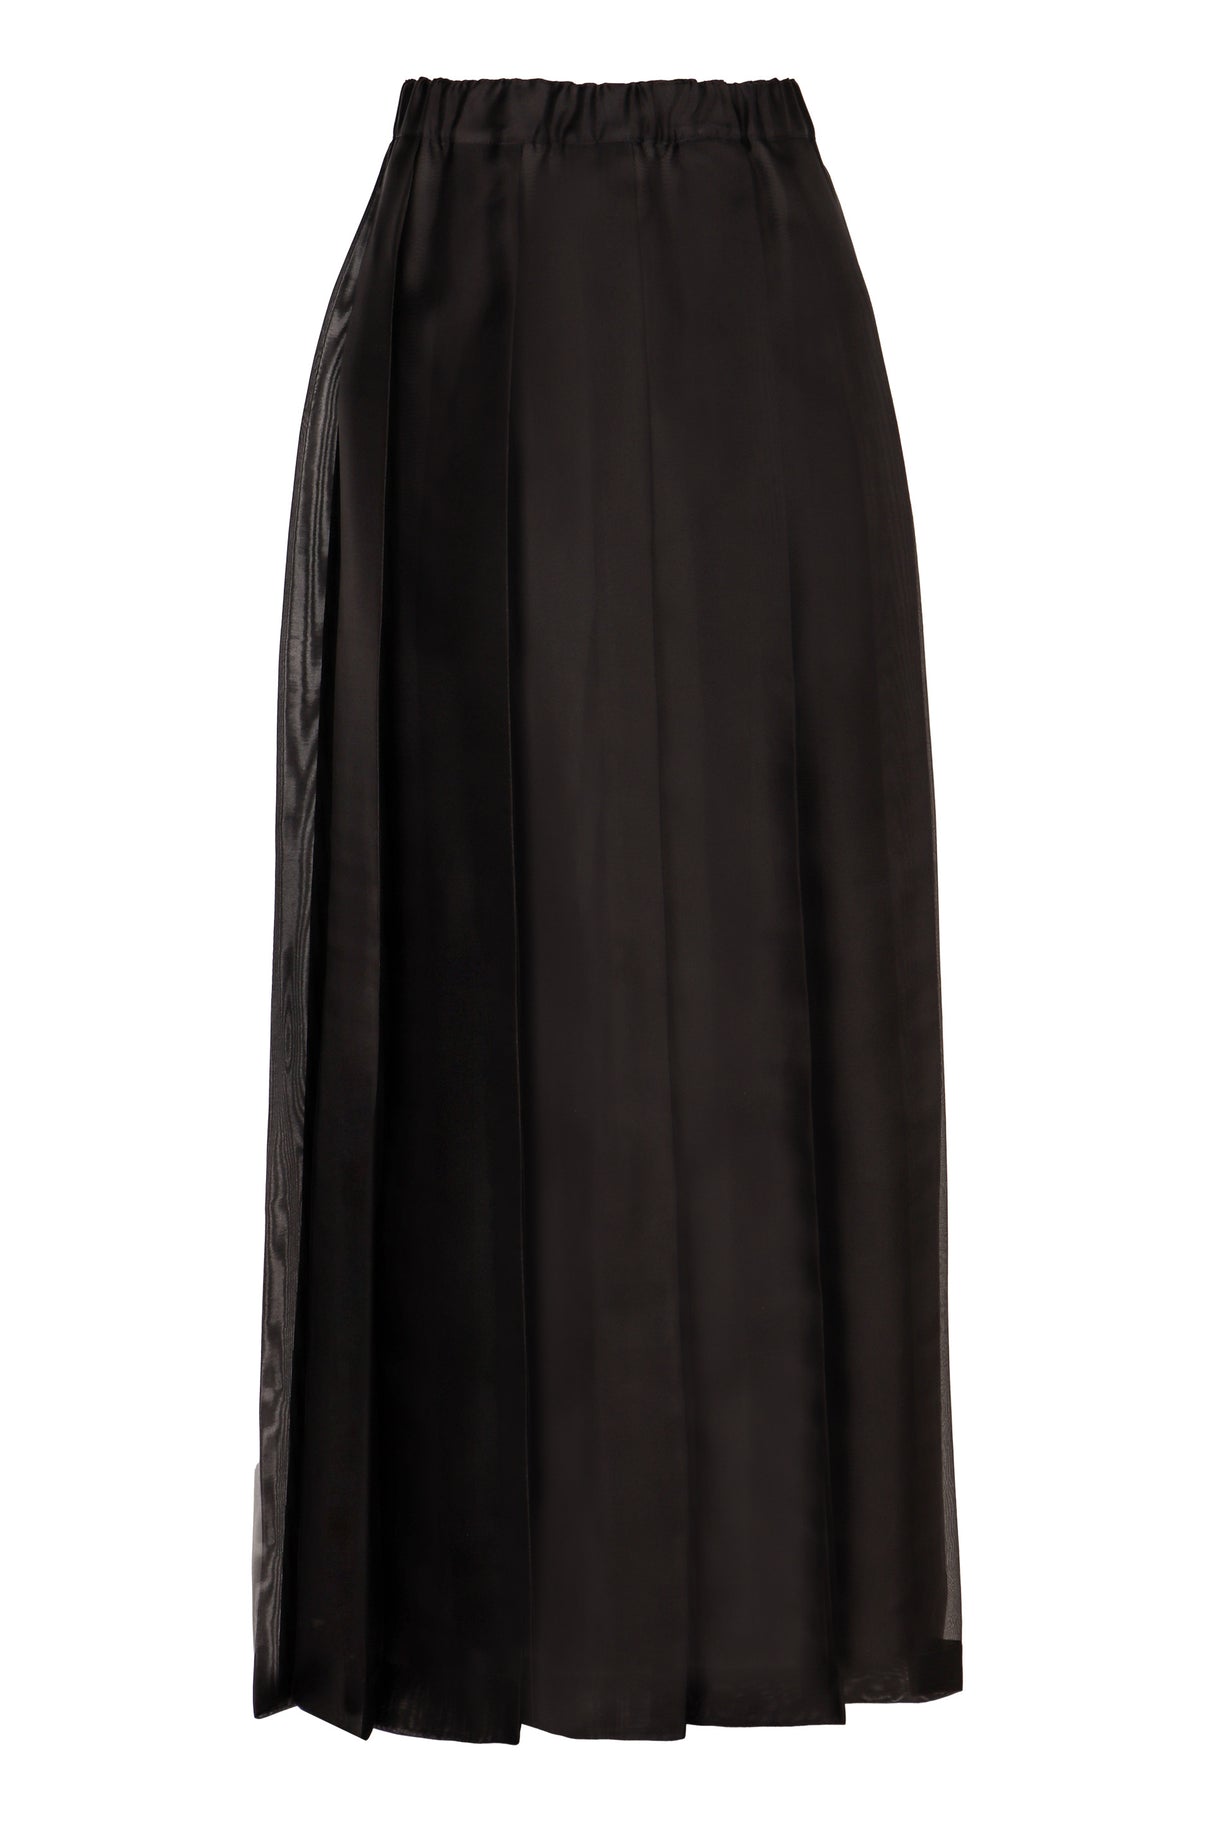 Chân váy lụa đen dáng midi với phần thắt đai co giãn và chi tiết xếp ly cho nữ